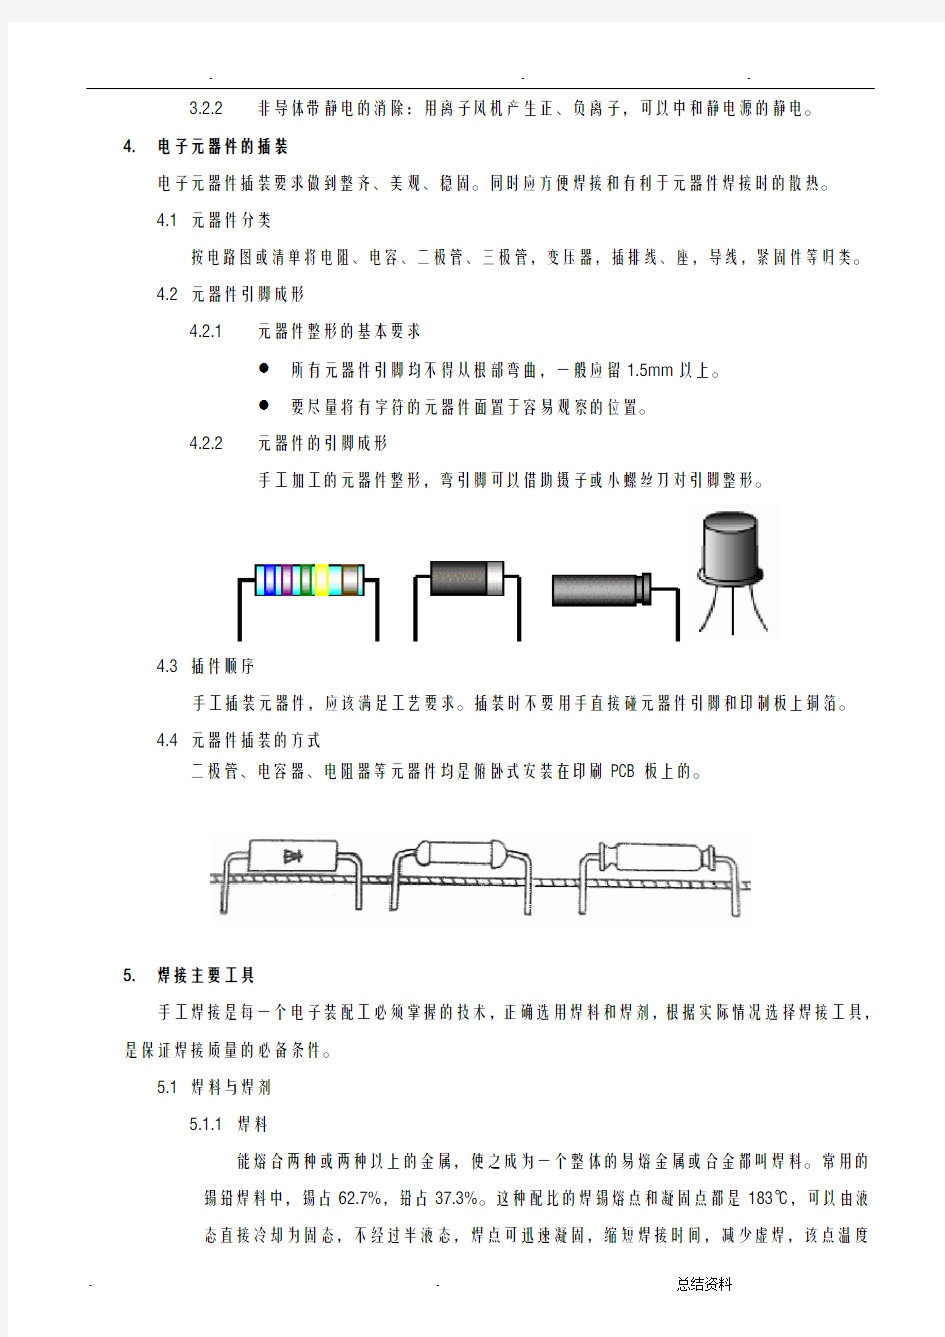 PCB板焊接工艺流程图